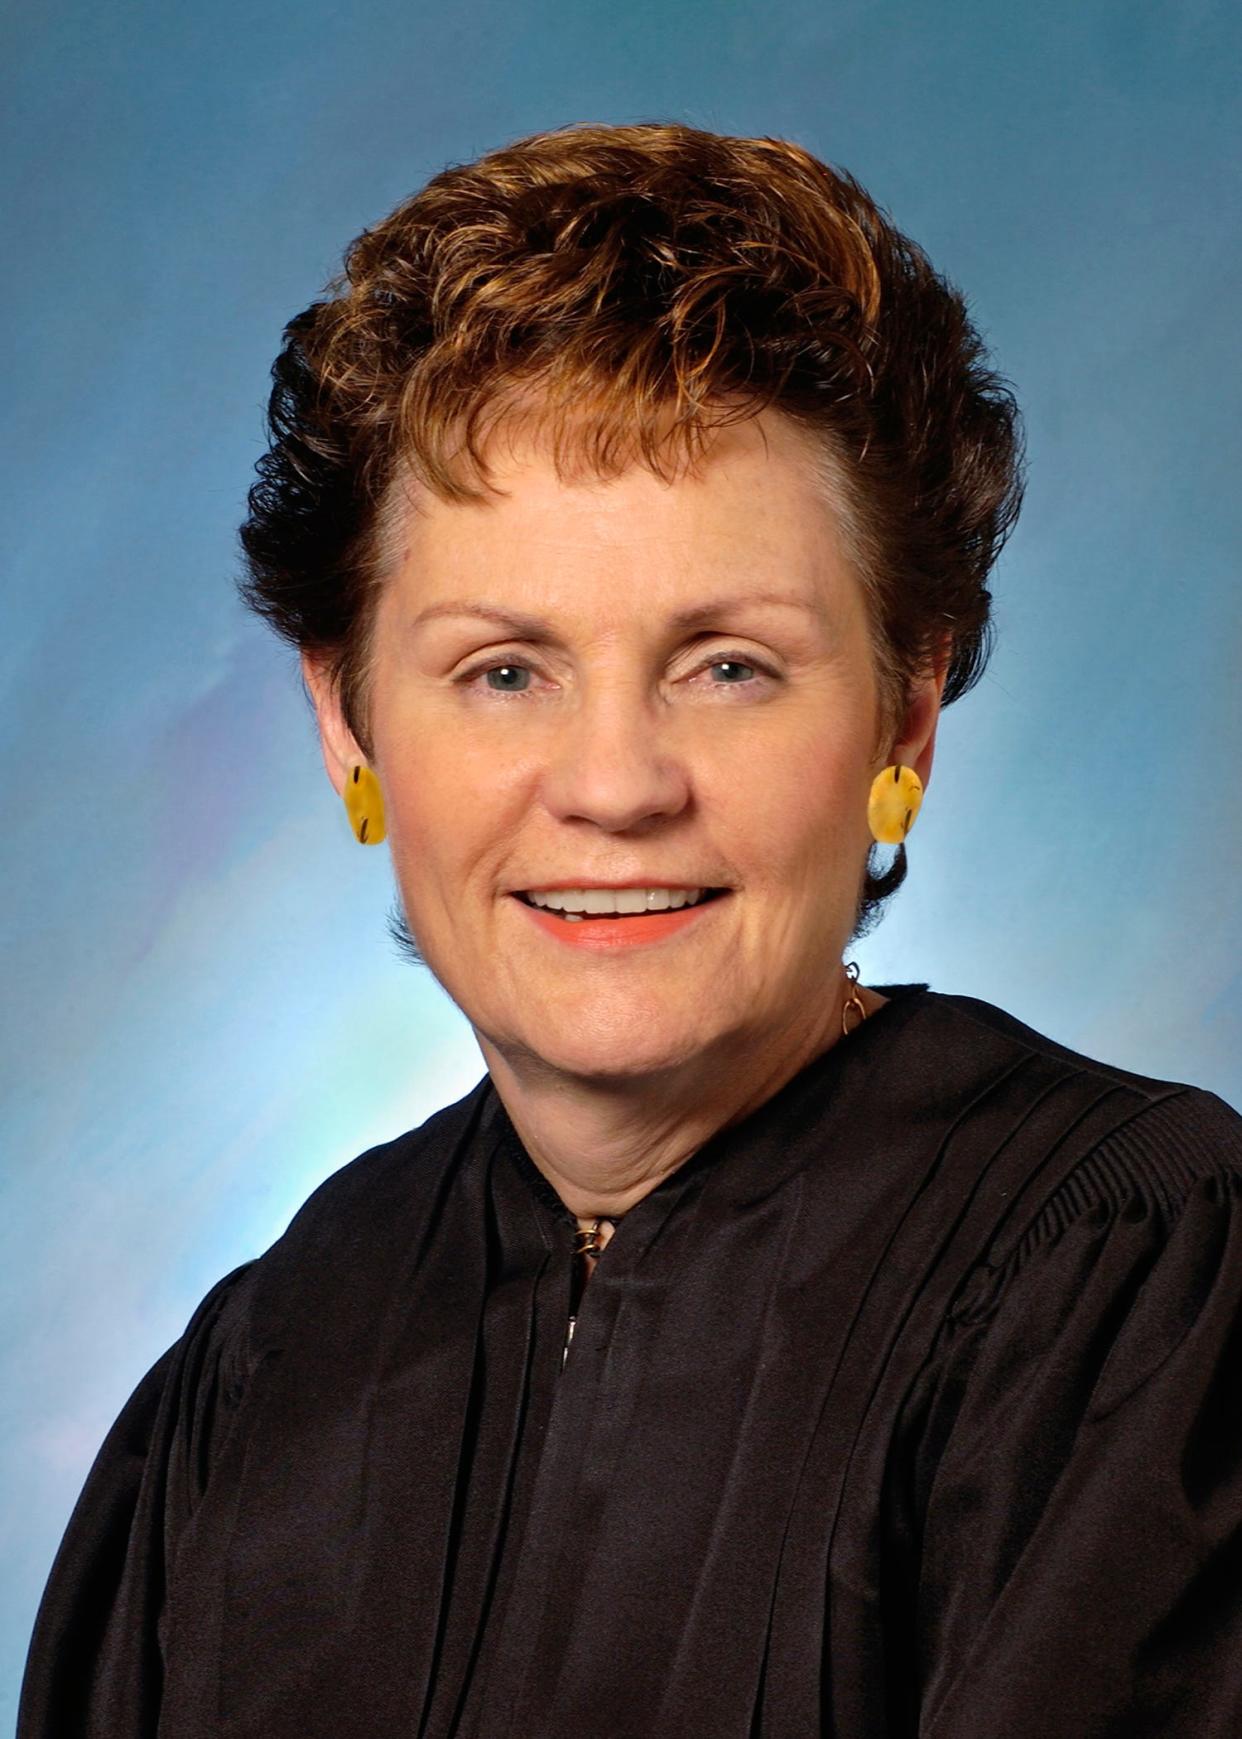 Illinois Supreme Court Justice Rita Garman